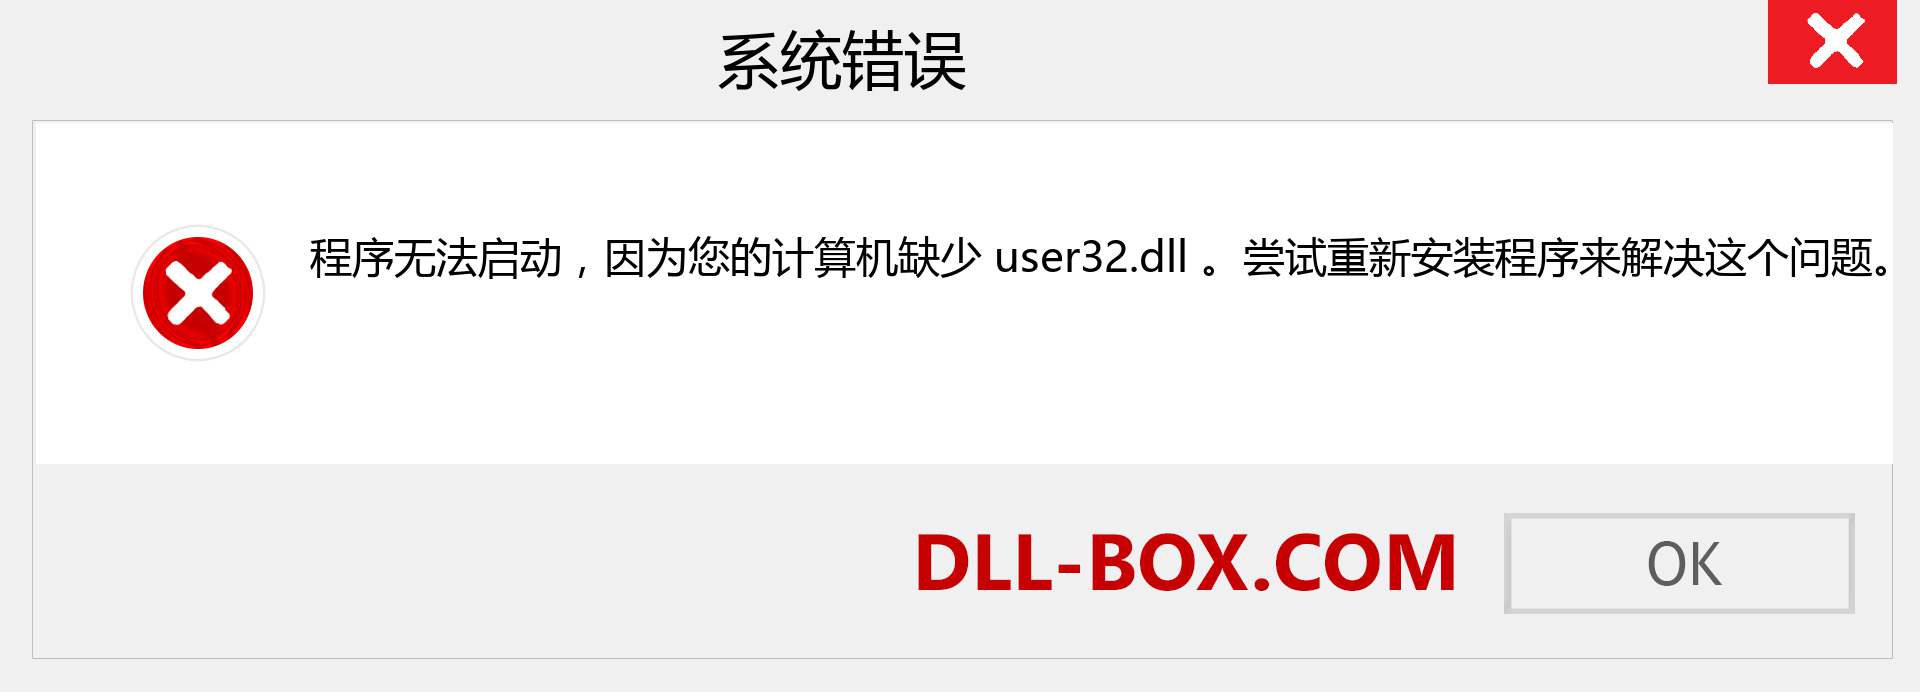 user32.dll 文件丢失？。 适用于 Windows 7、8、10 的下载 - 修复 Windows、照片、图像上的 user32 dll 丢失错误